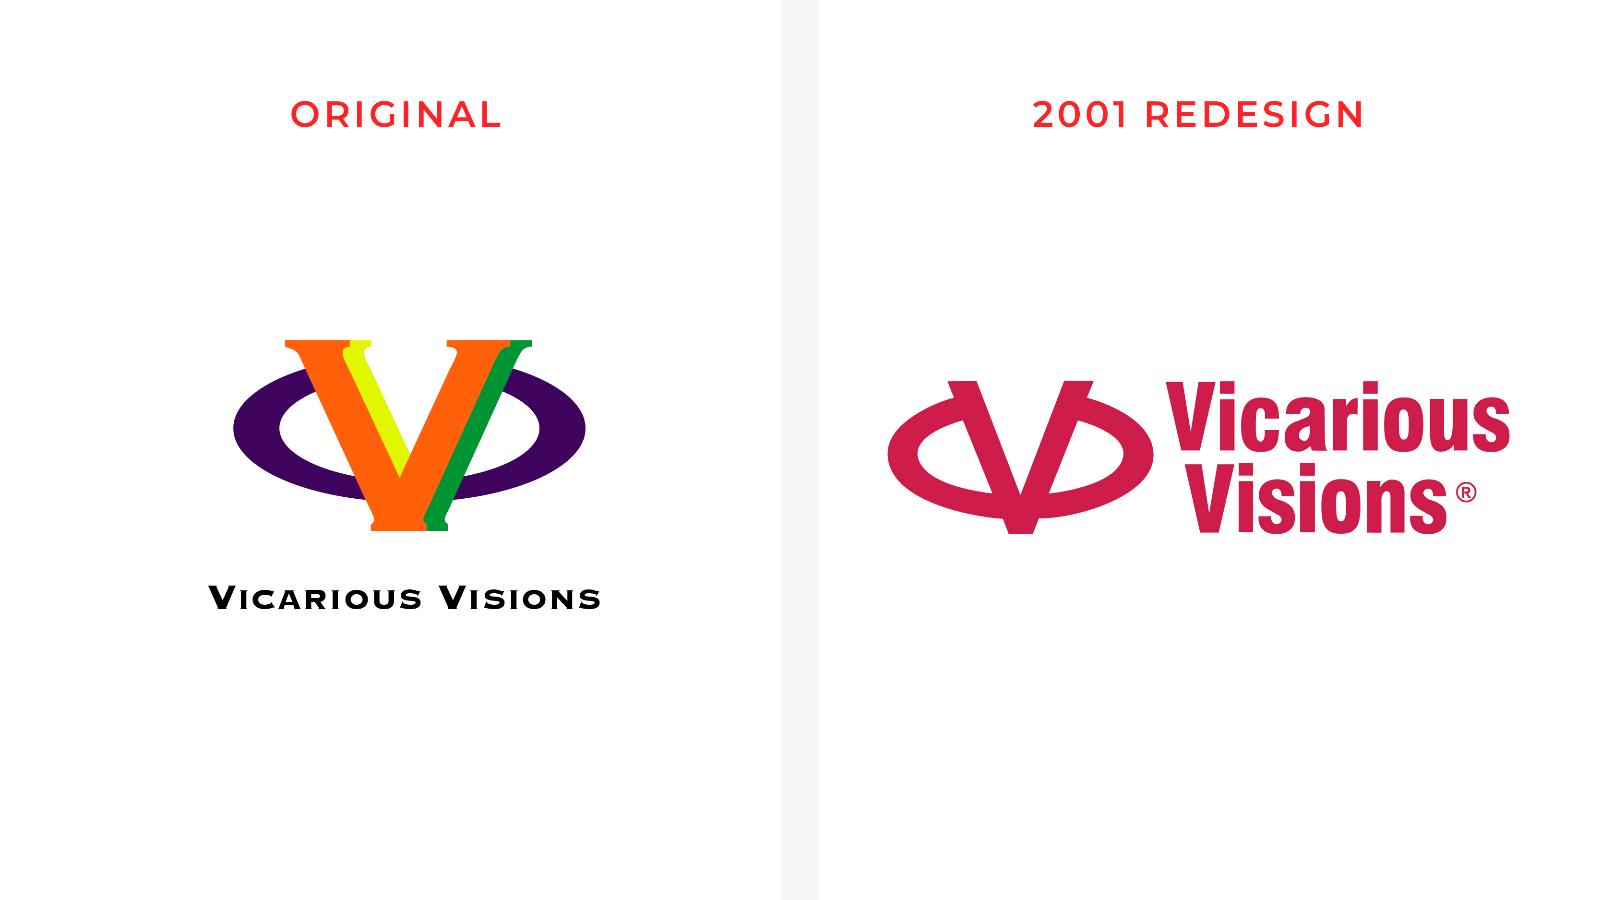 Vicarious Visions | Old logos